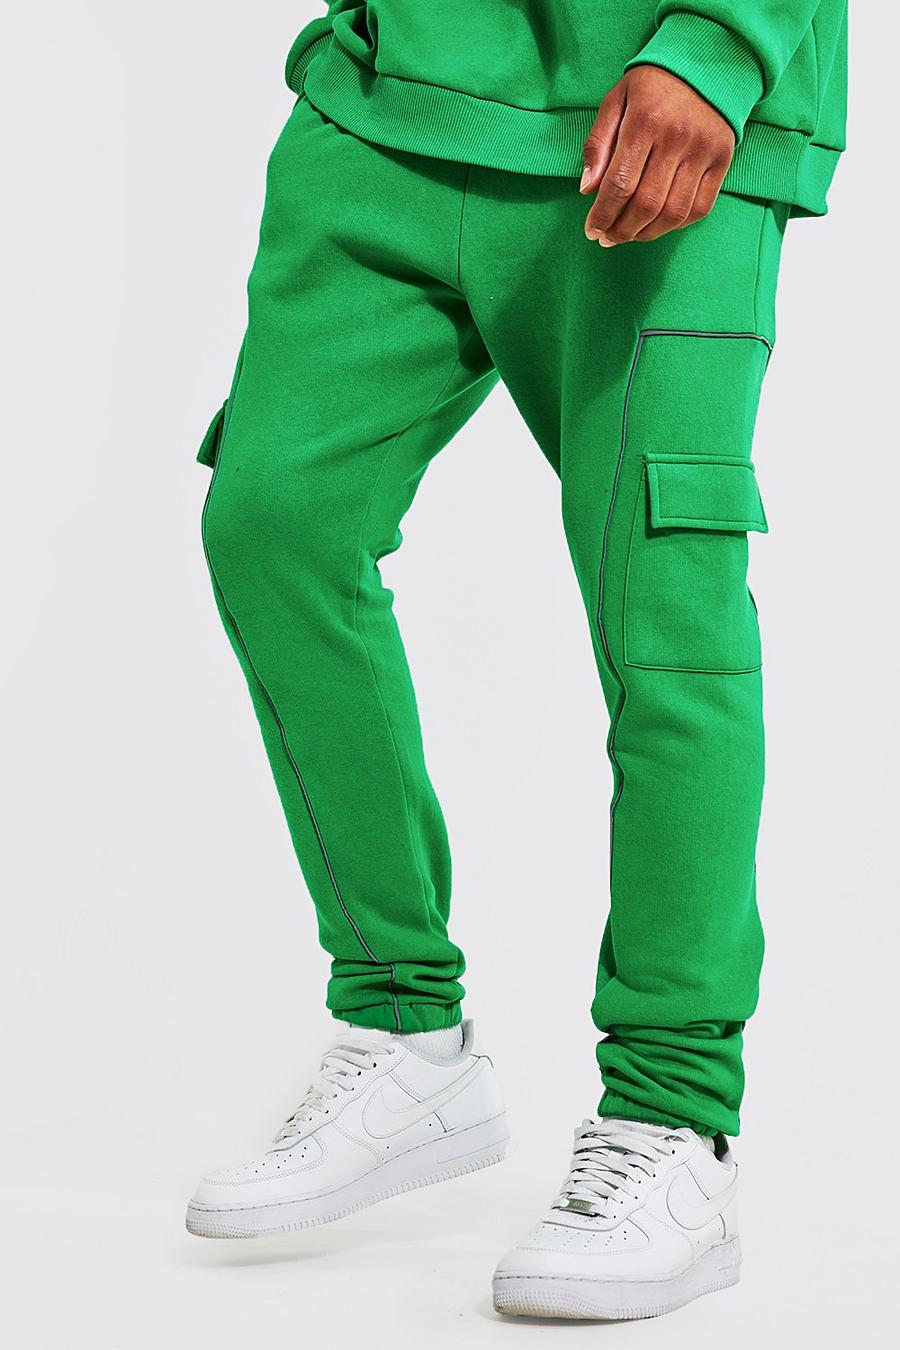 Pantalones deportivos Tall cargo con ribete reflectante, Bright green gerde